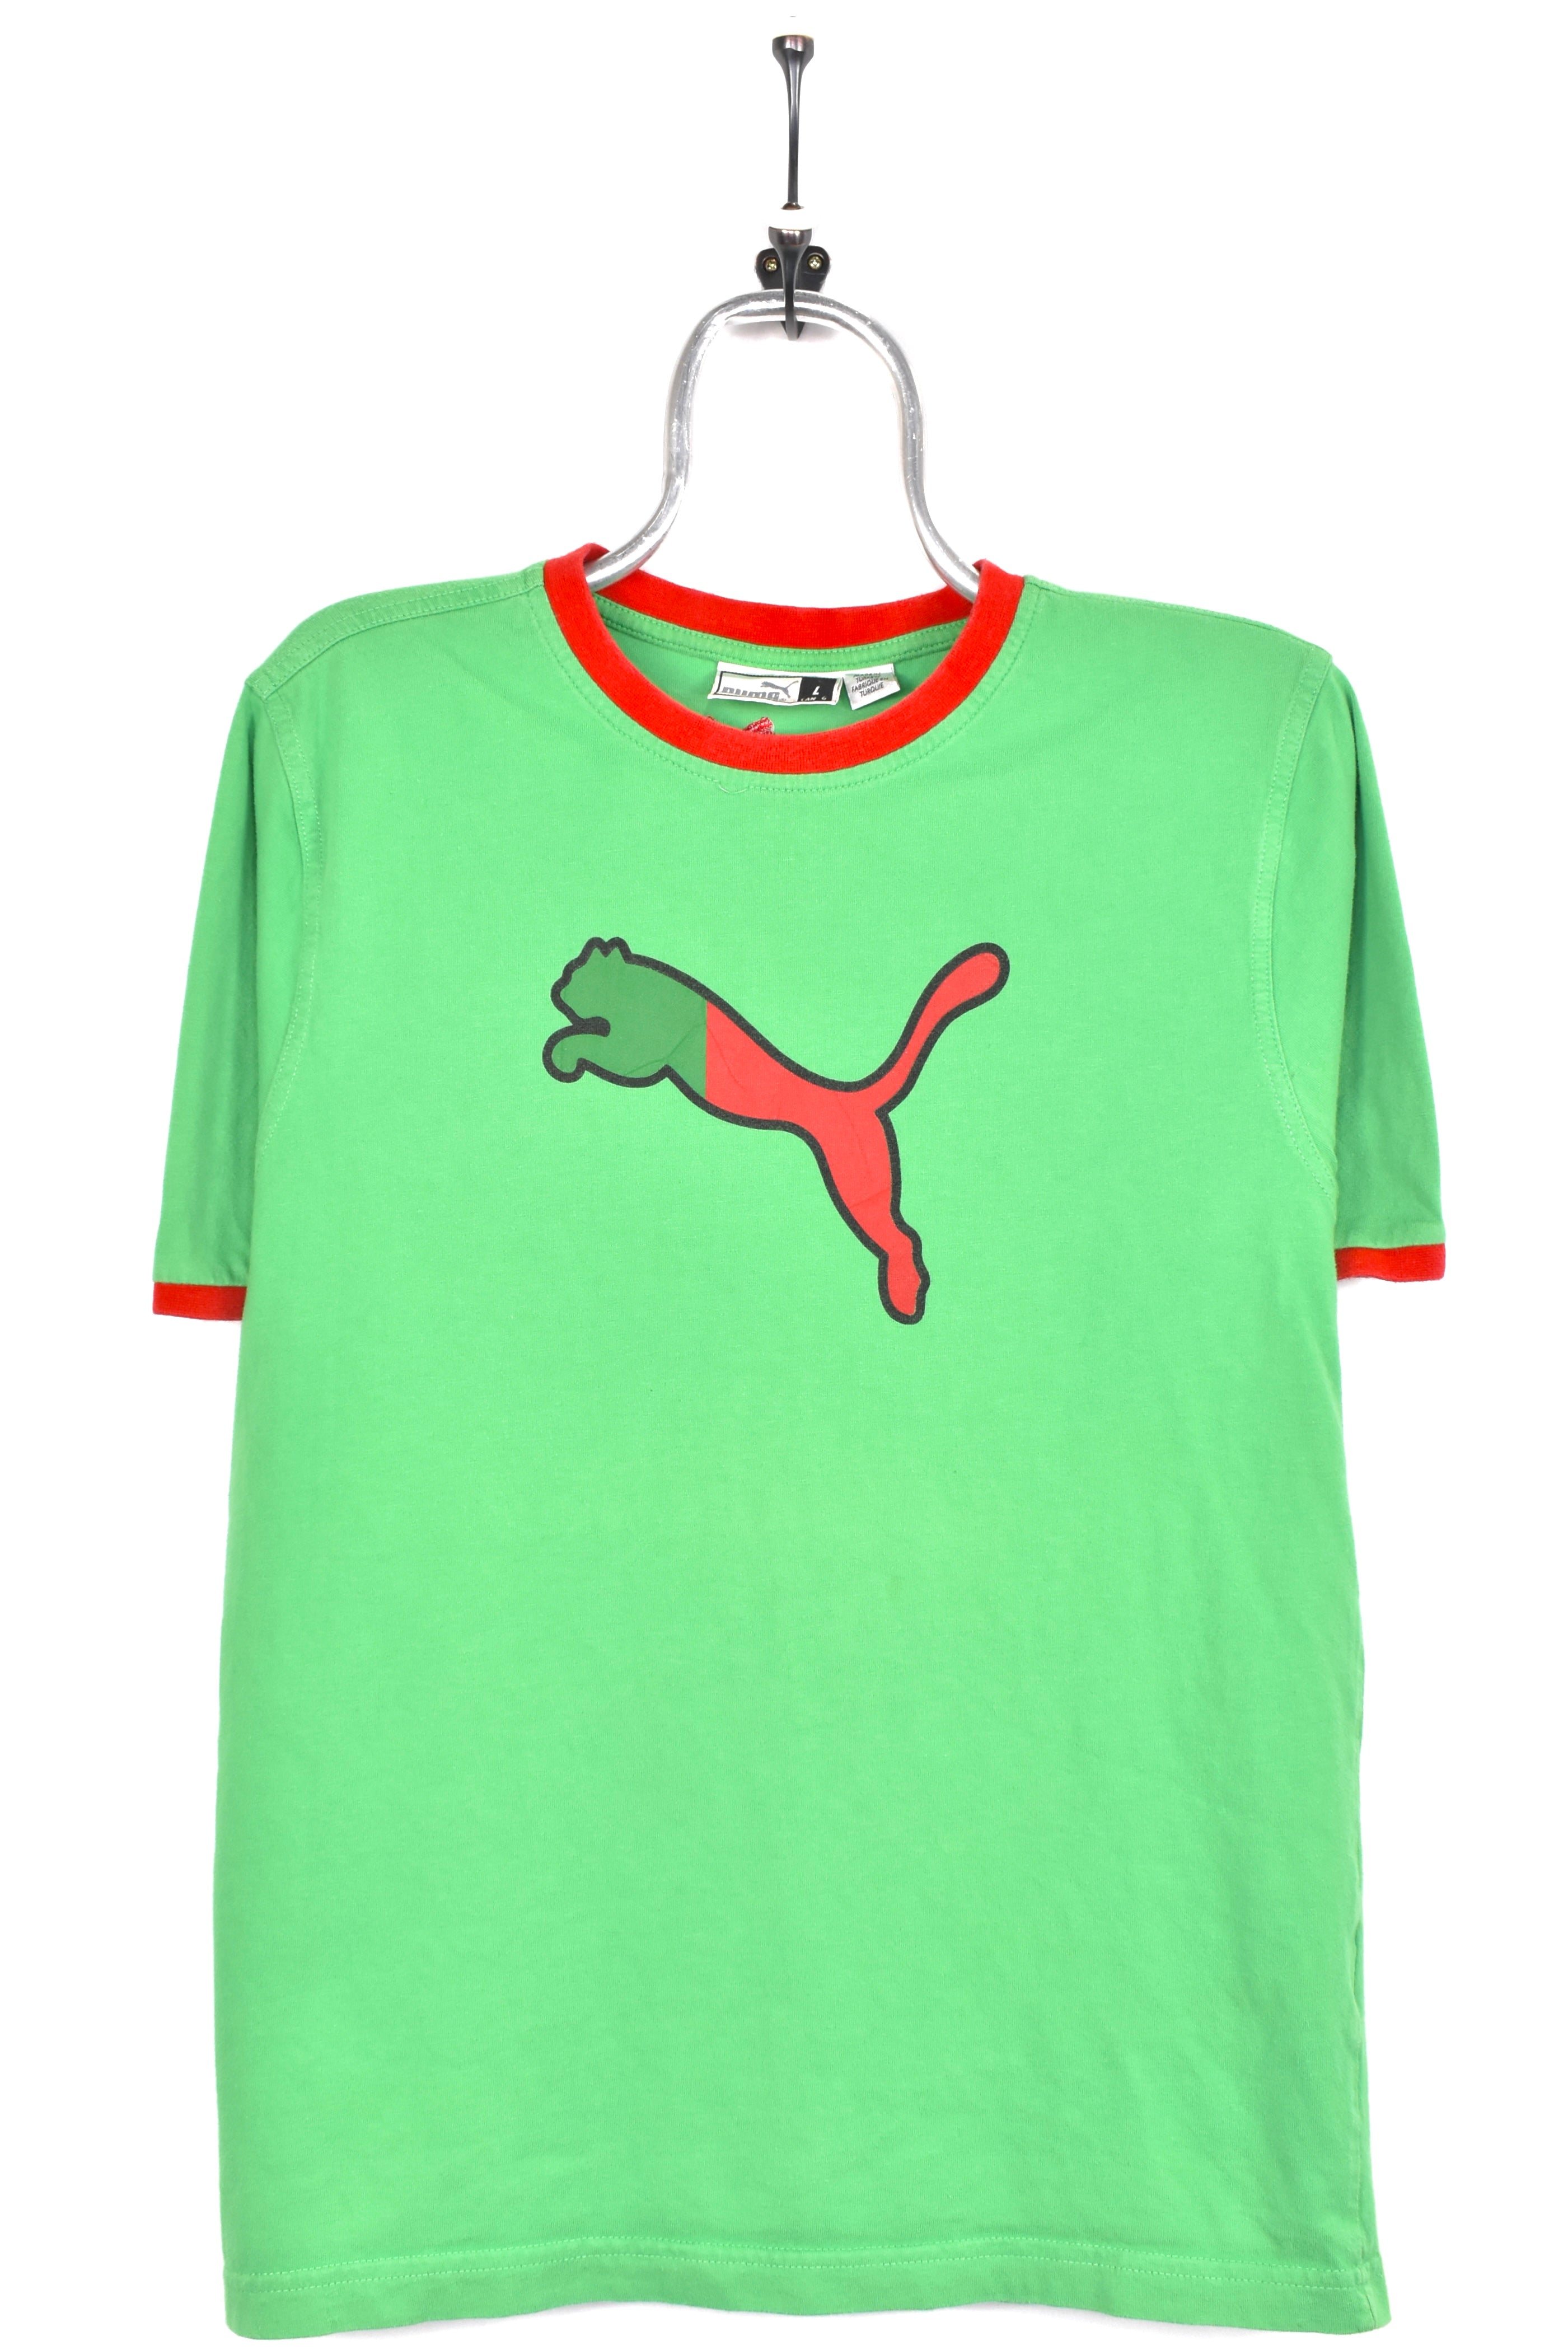 Vintage Puma shirt, green graphic tee - AU M PUMA